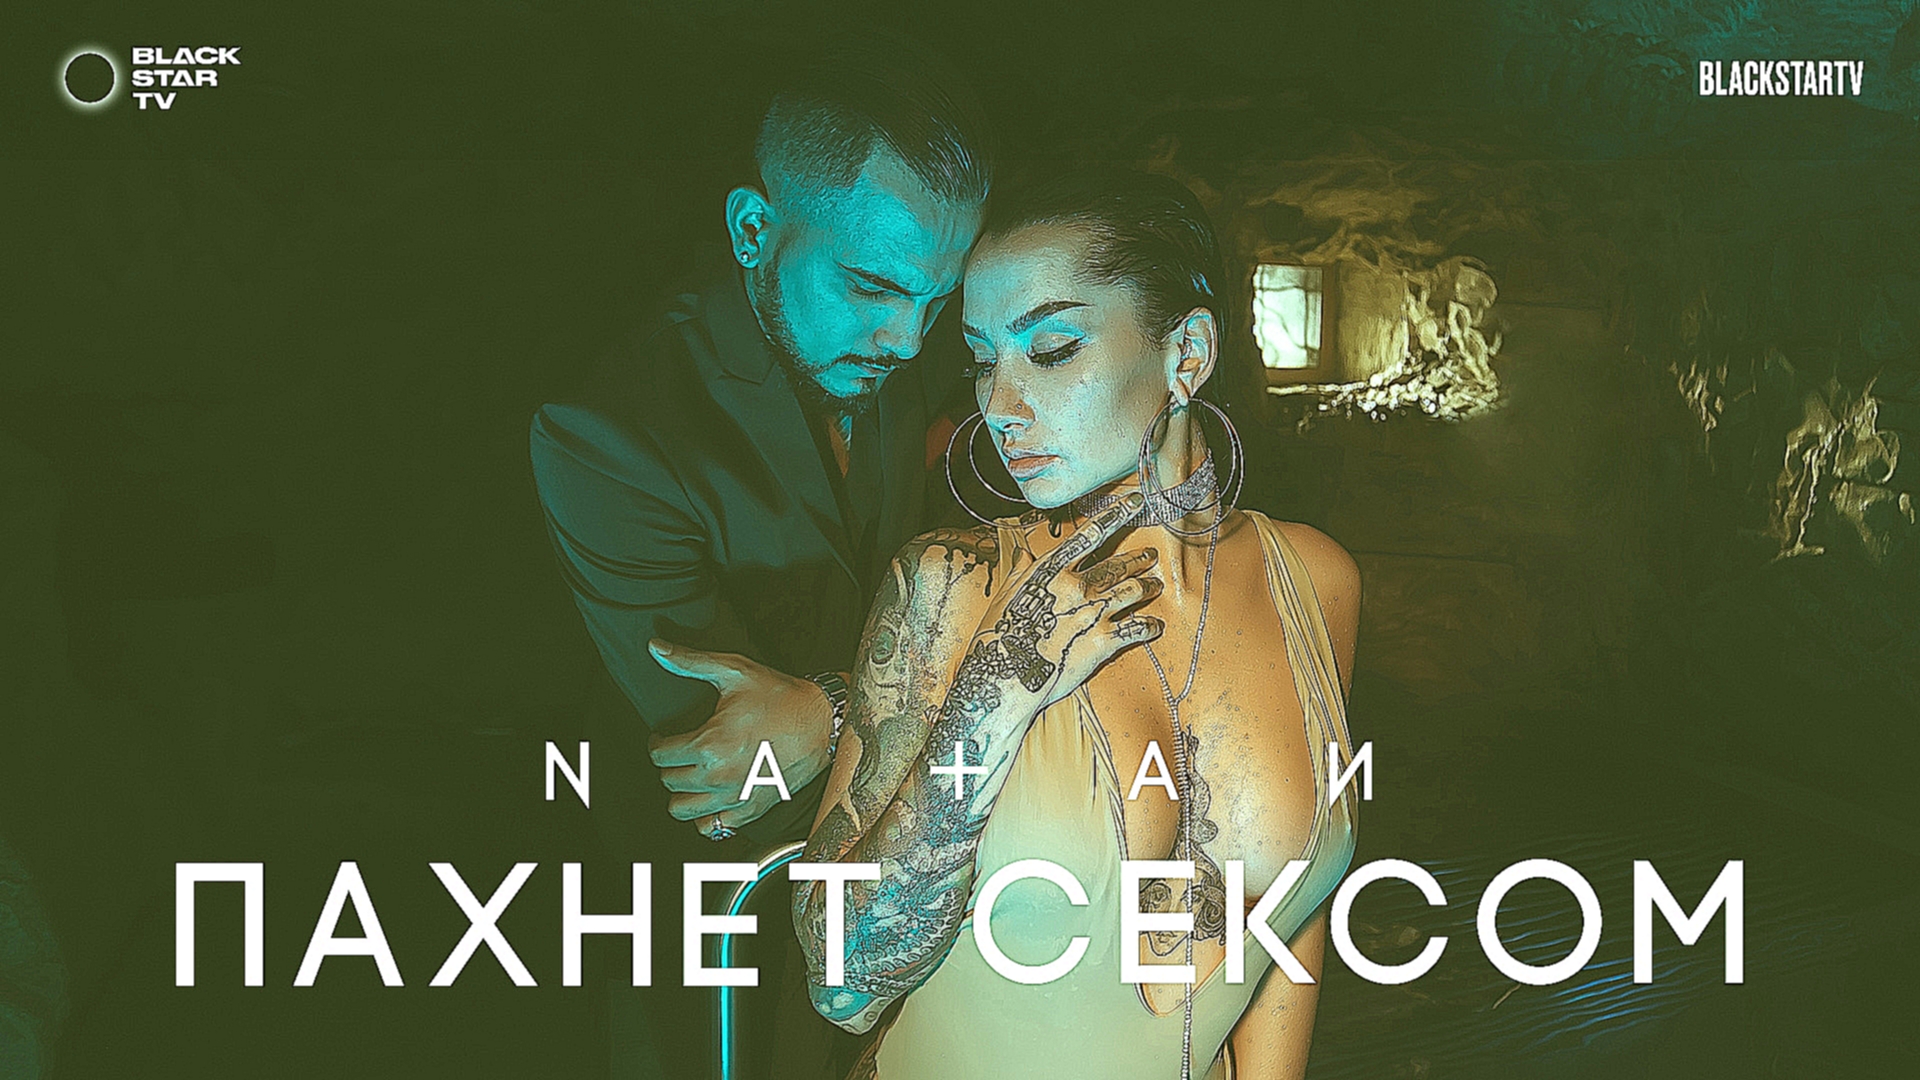 Natan - Пахнет сексом (премьера клипа, 2017) - видеоклип на песню